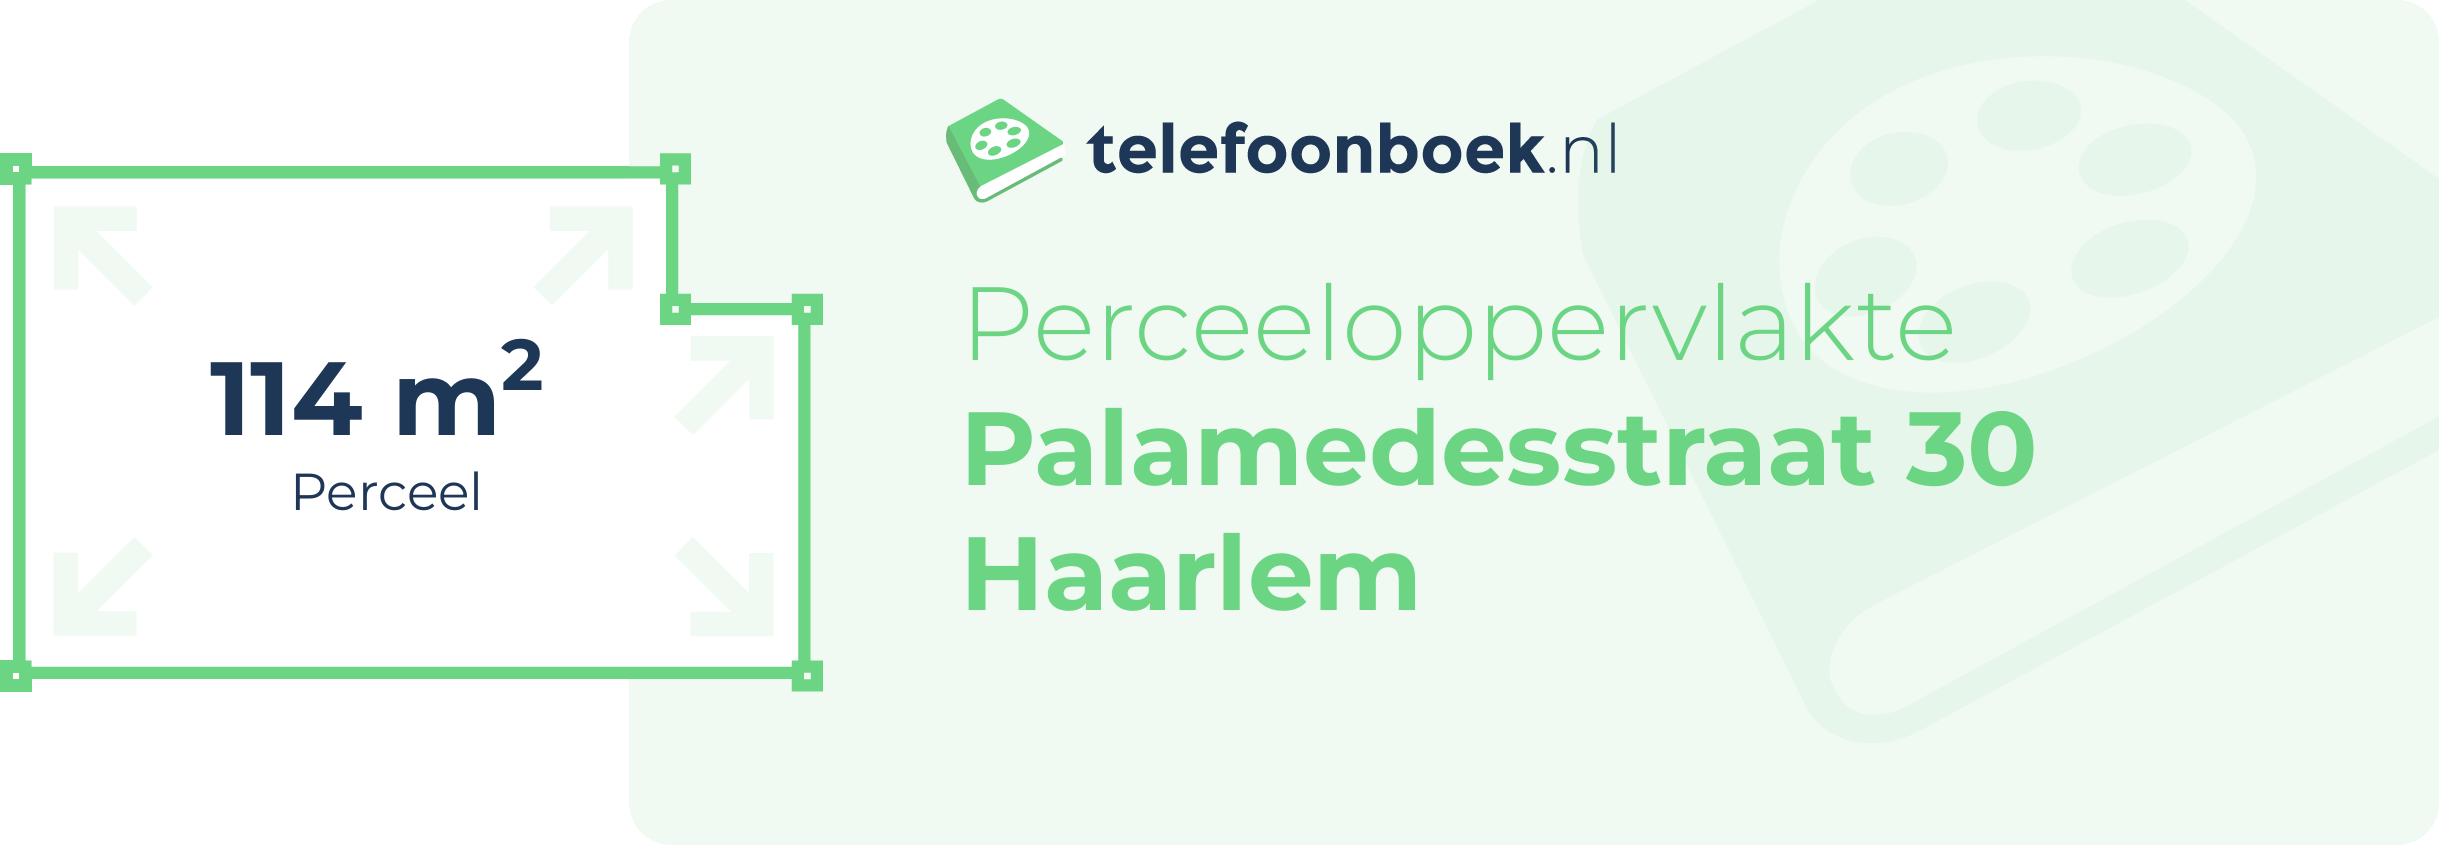 Perceeloppervlakte Palamedesstraat 30 Haarlem